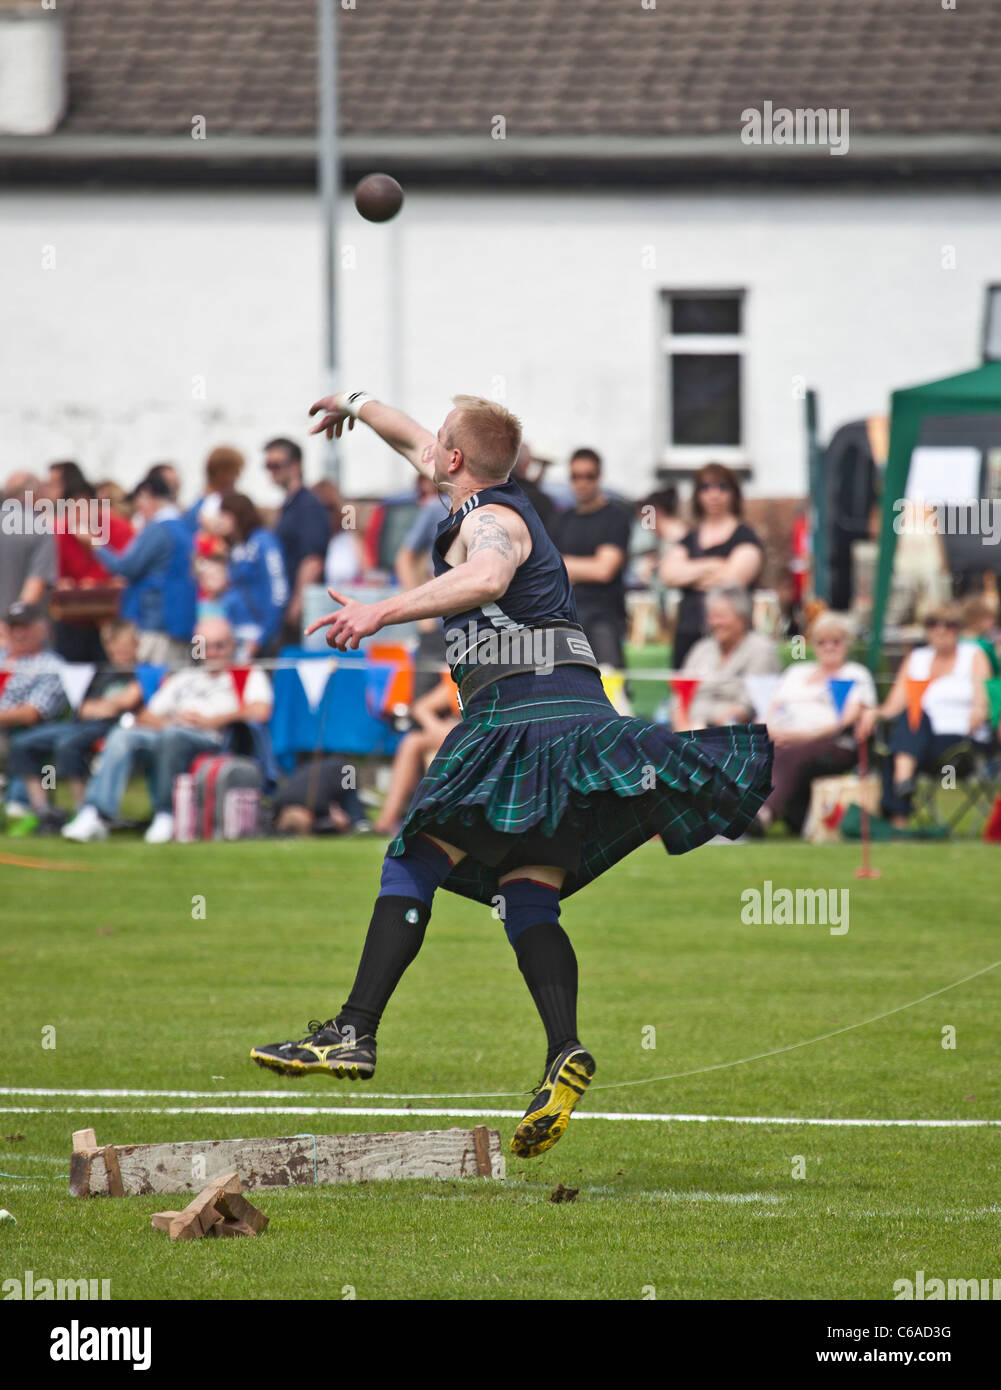 Le port de l'athlète un kilt, mettant le feu sur les Jeux des Highlands de Brodick, Isle of Arran, Ecosse, Royaume-Uni Banque D'Images